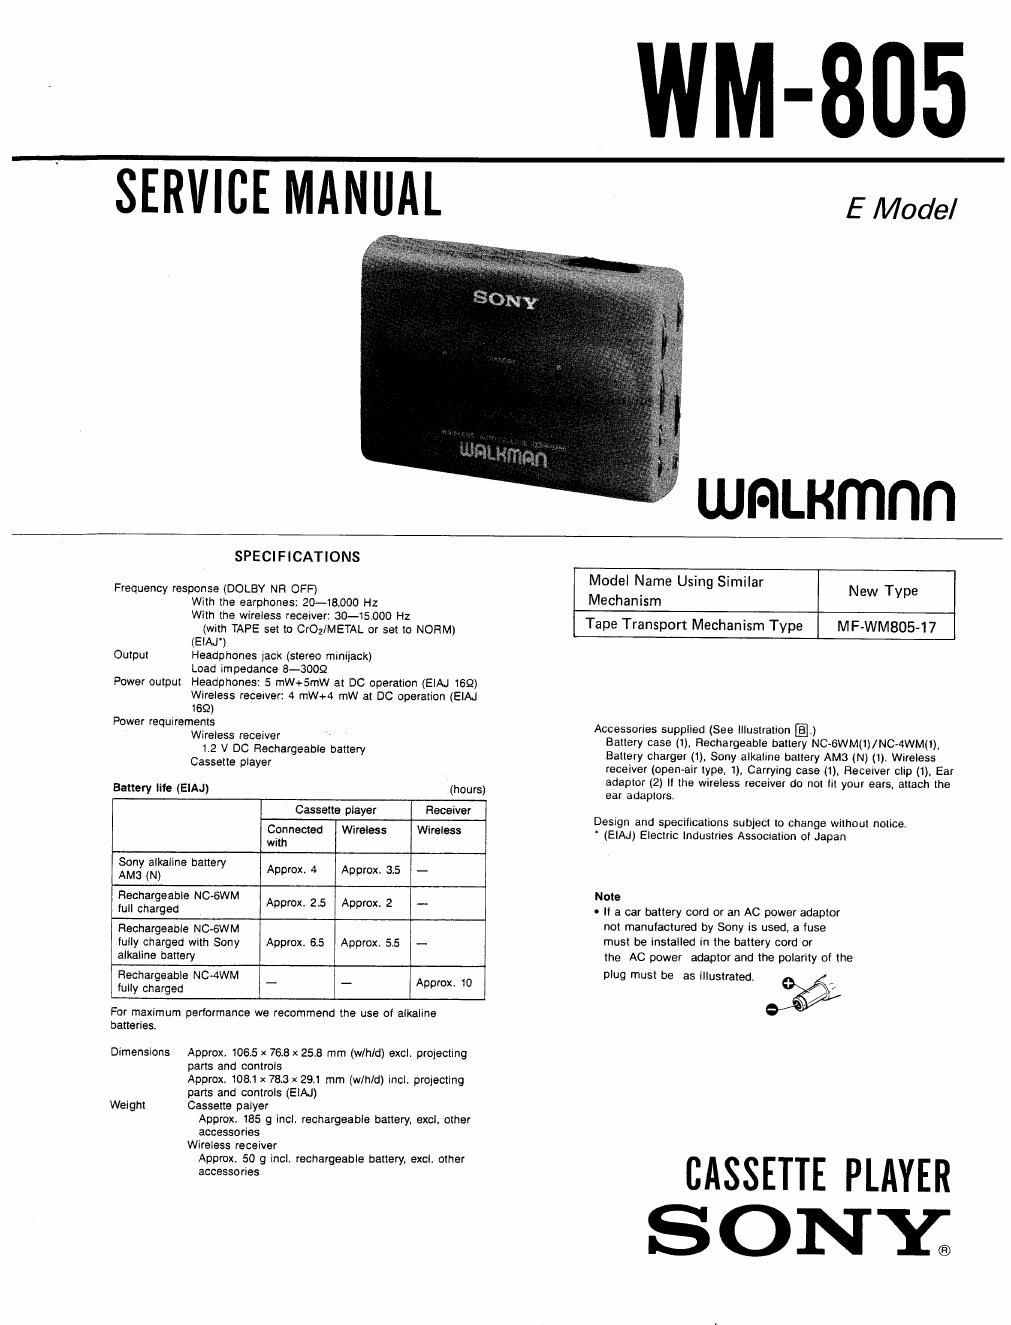 sony wm 805 service manual